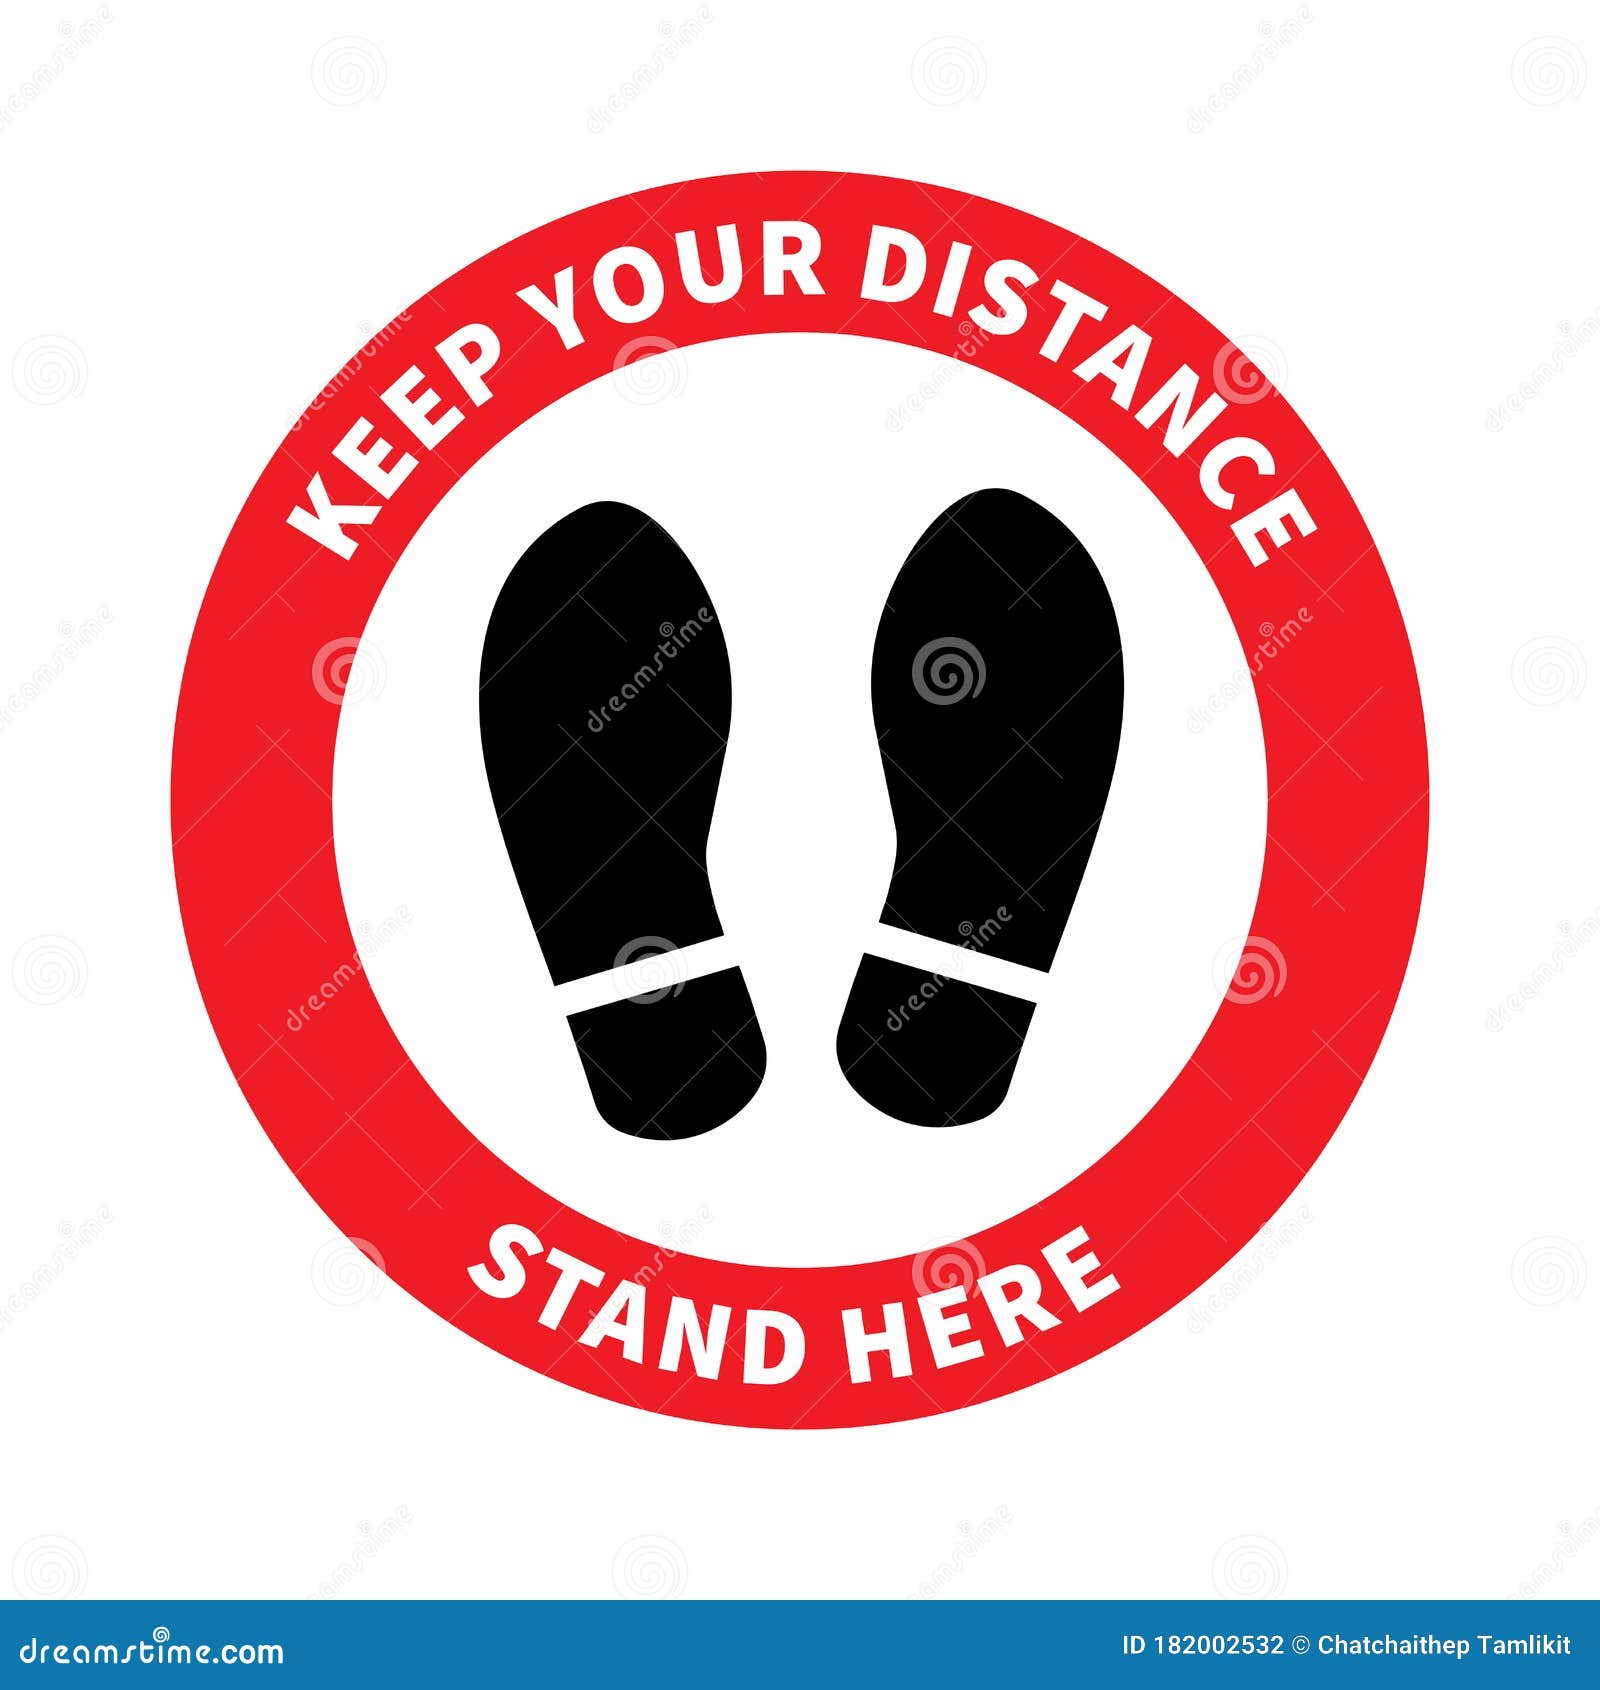 social distancing. footprint sign. keep the 2 meter distance. coronovirus epidemic protective. 